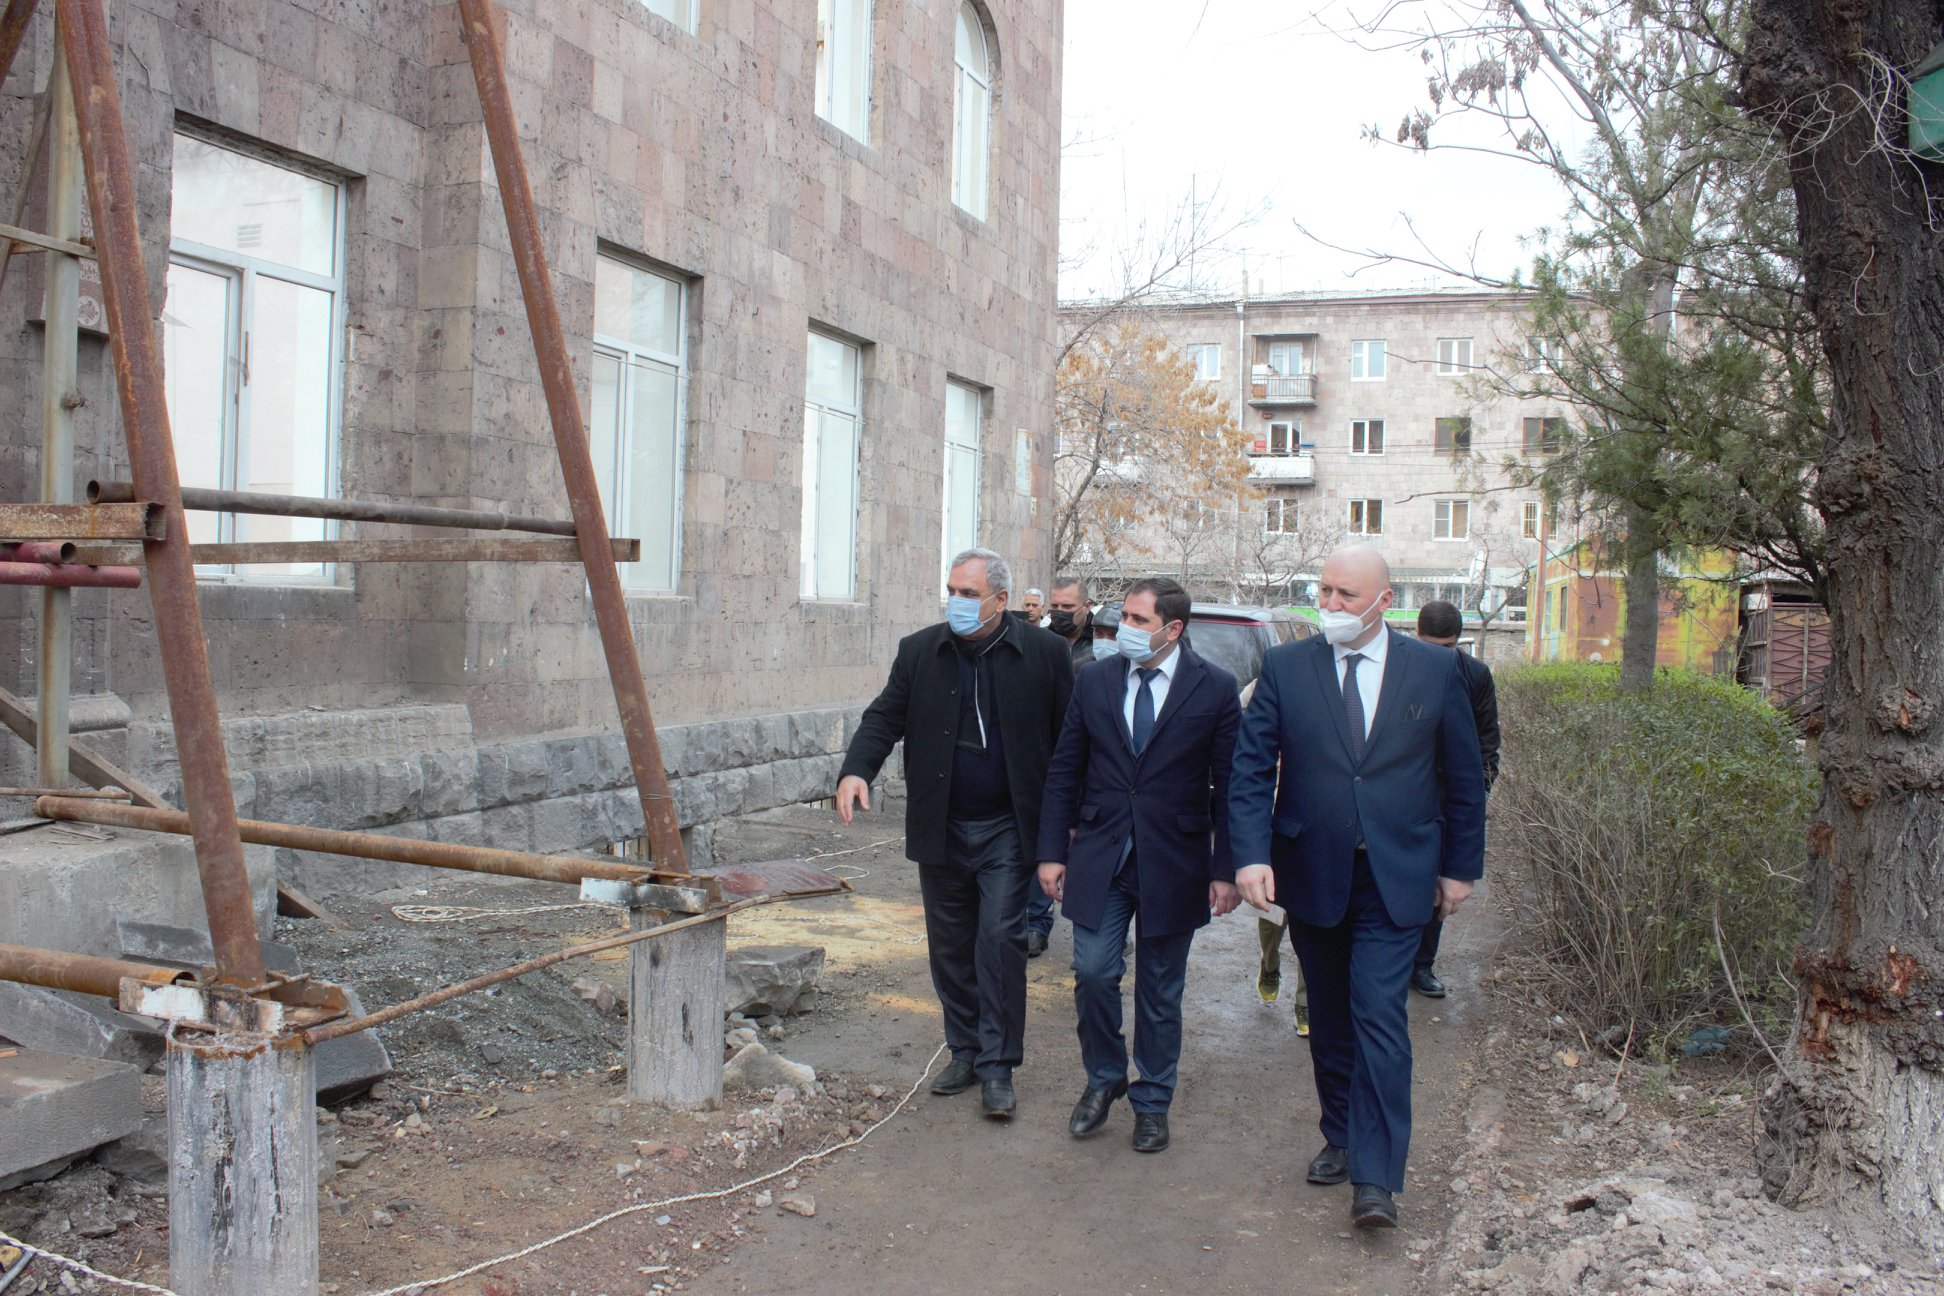 Երևանի թիվ 18 դպրոցը ևս վերակառուցվում է